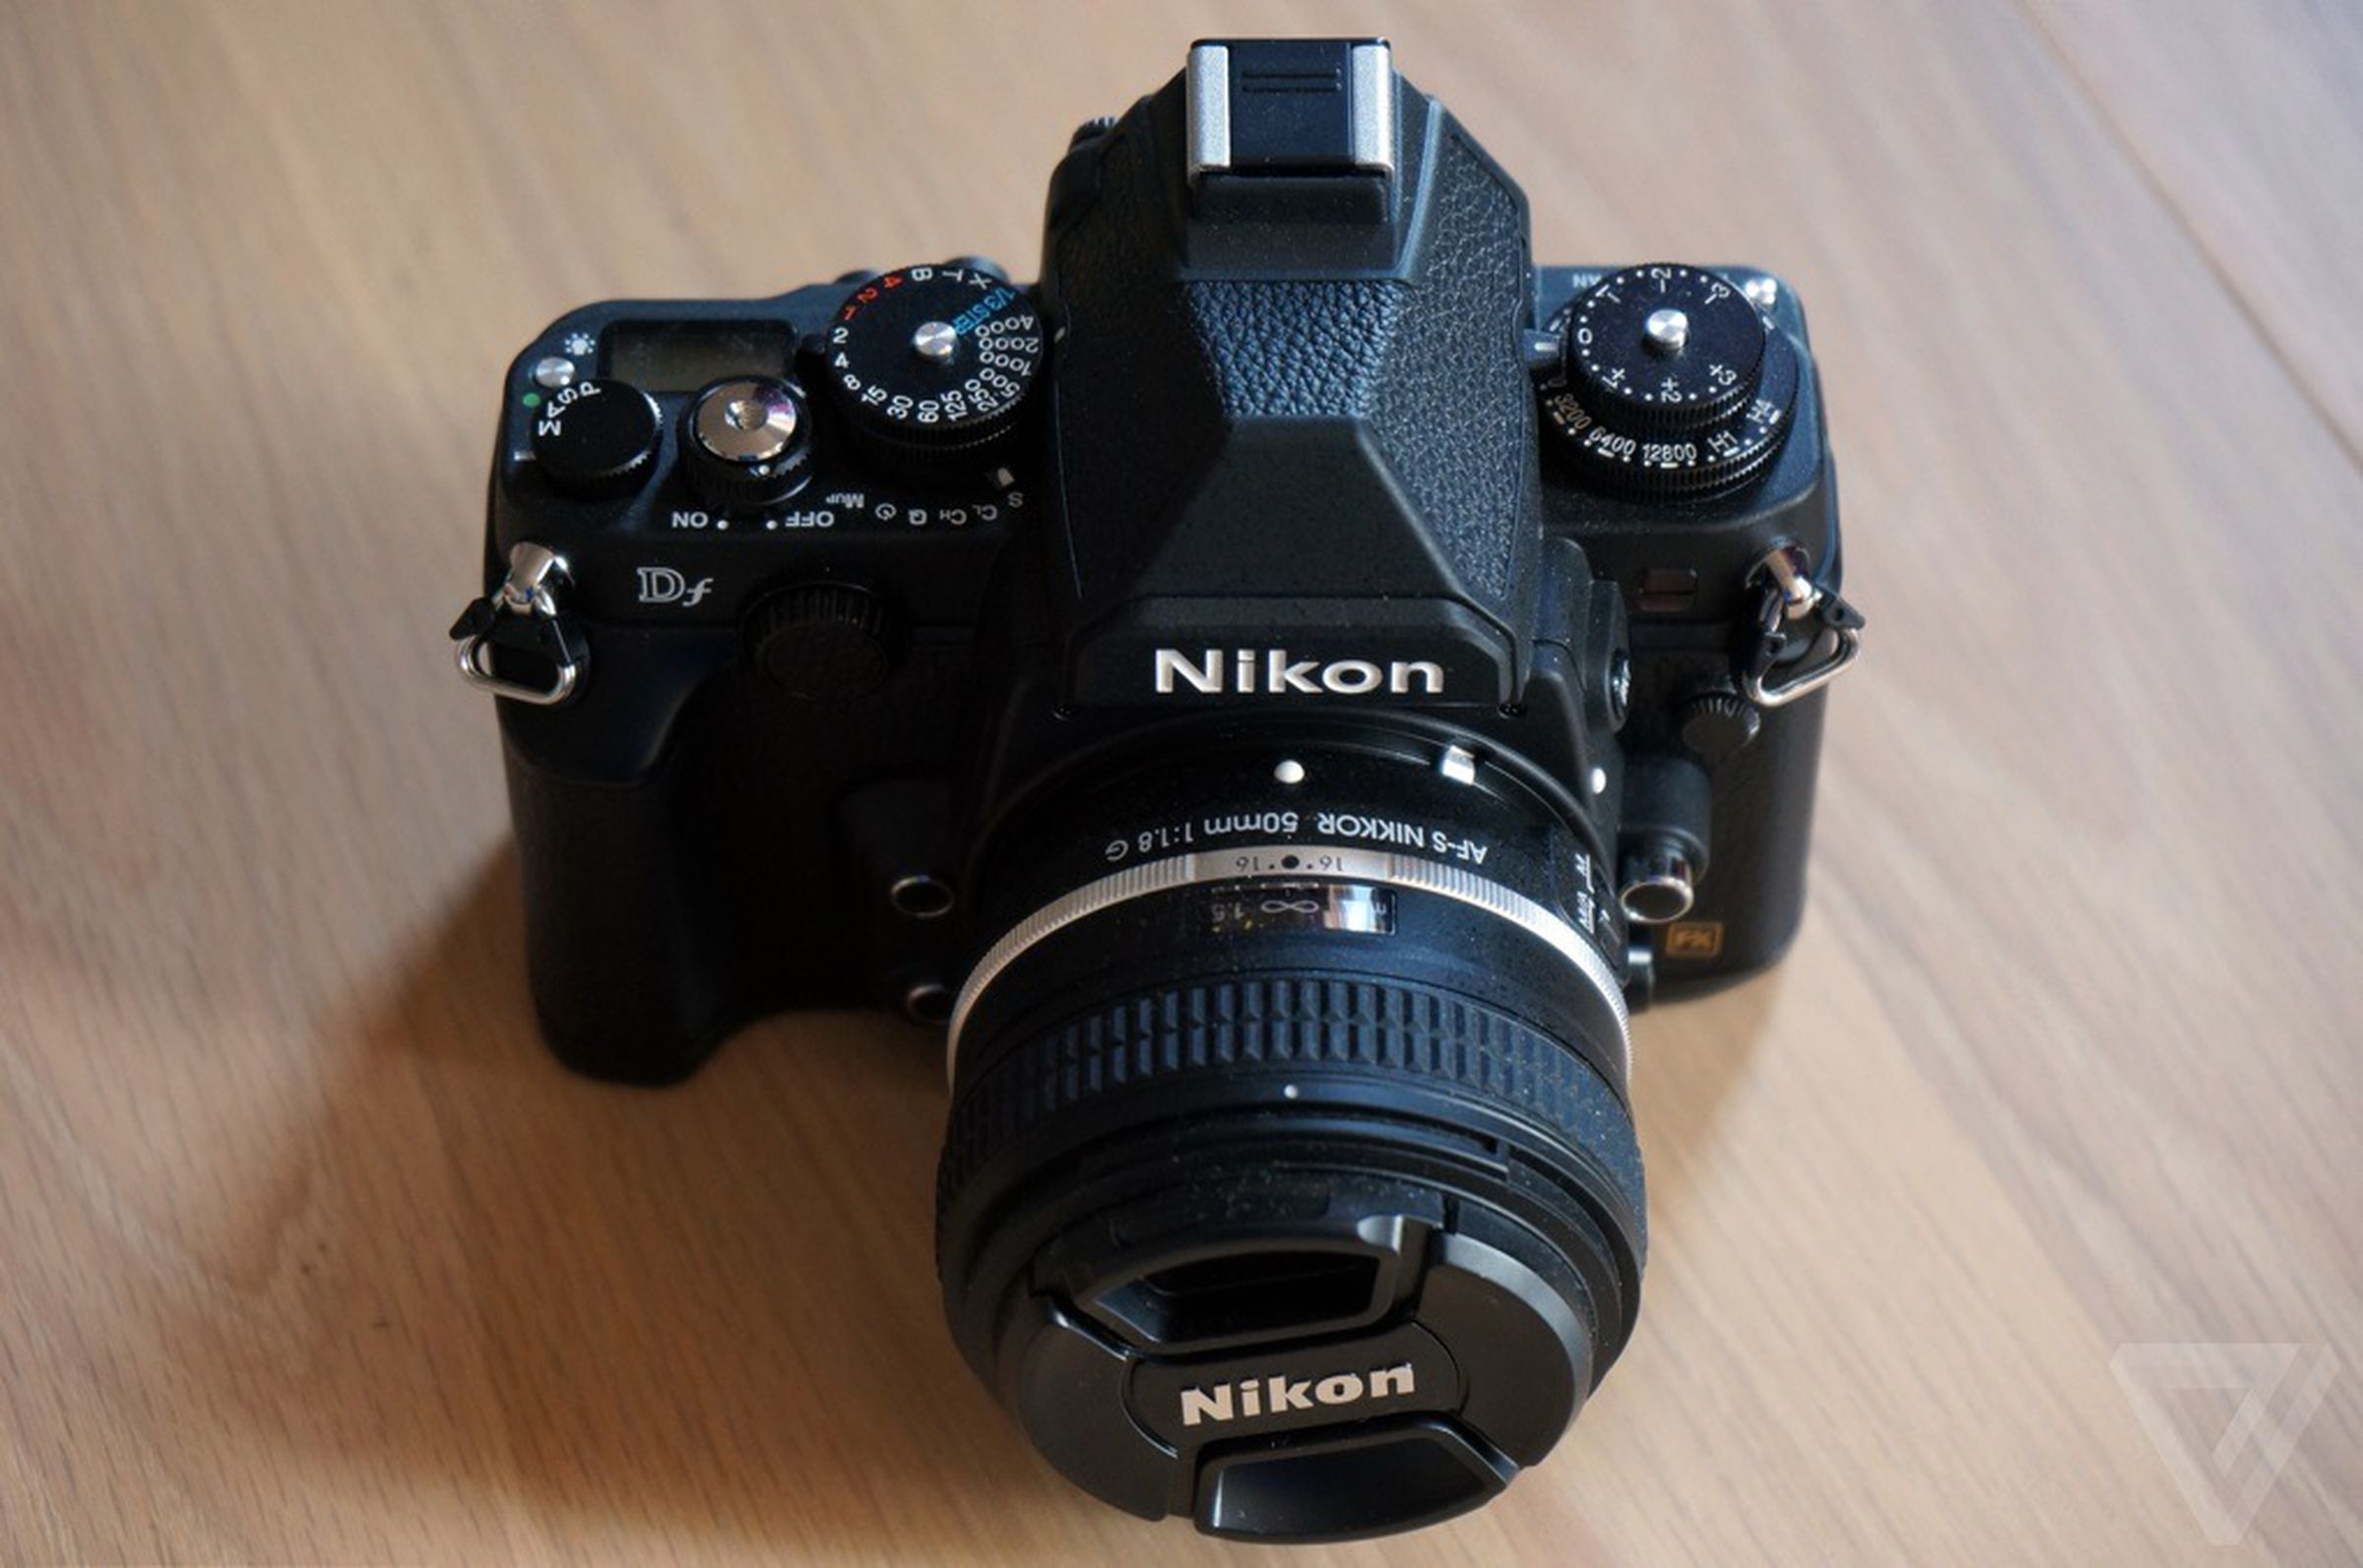 Nikon Df hands-on gallery